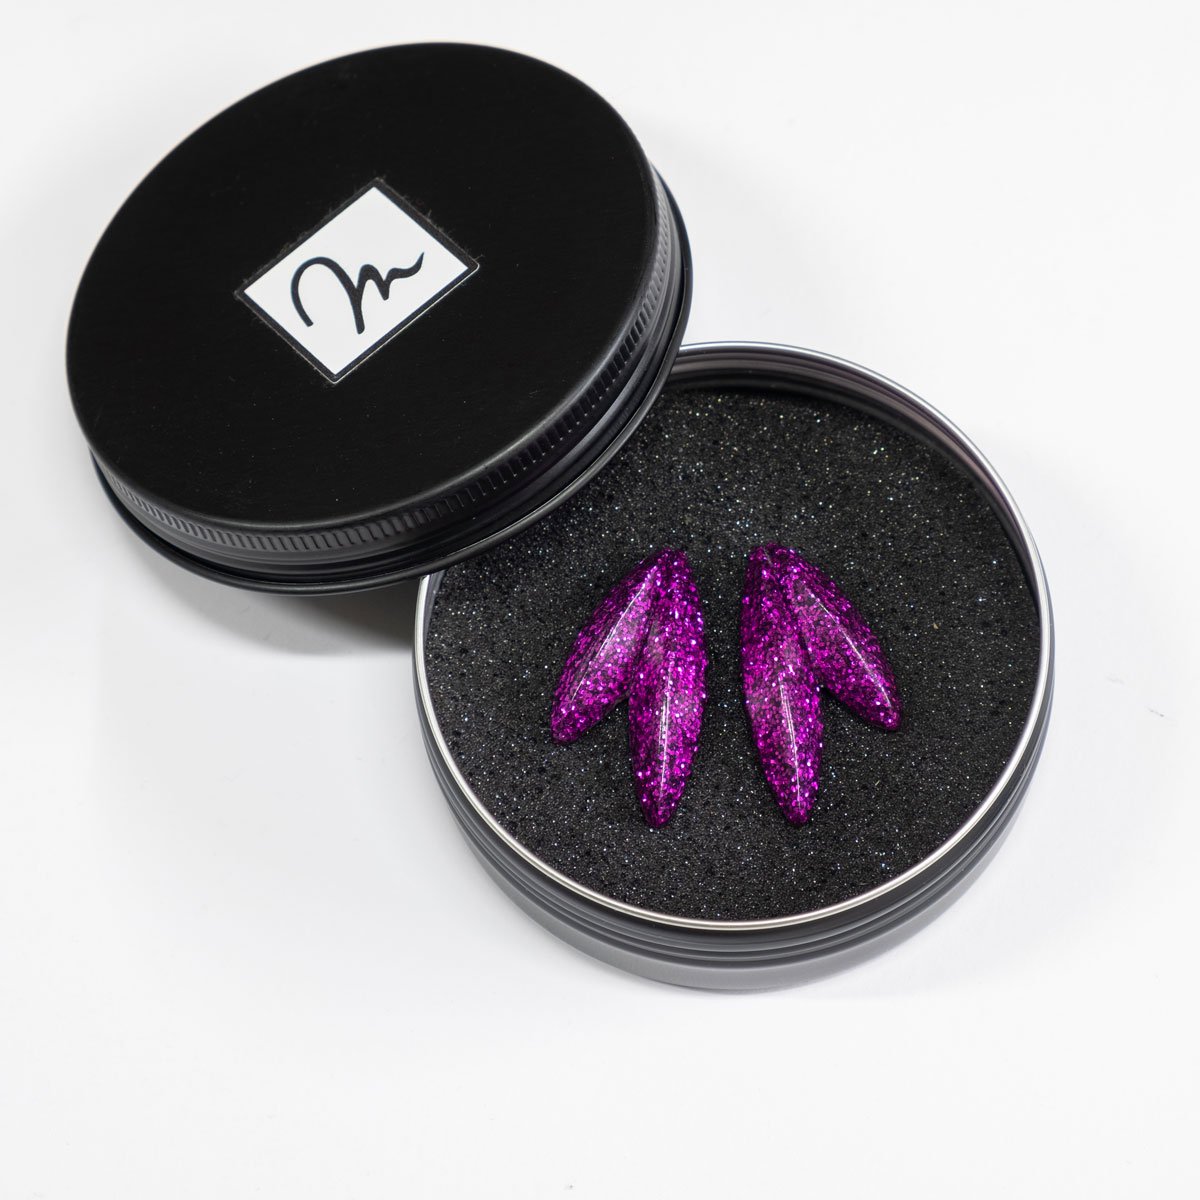 Twin-LEAVES ✕ Shine earrings, purple